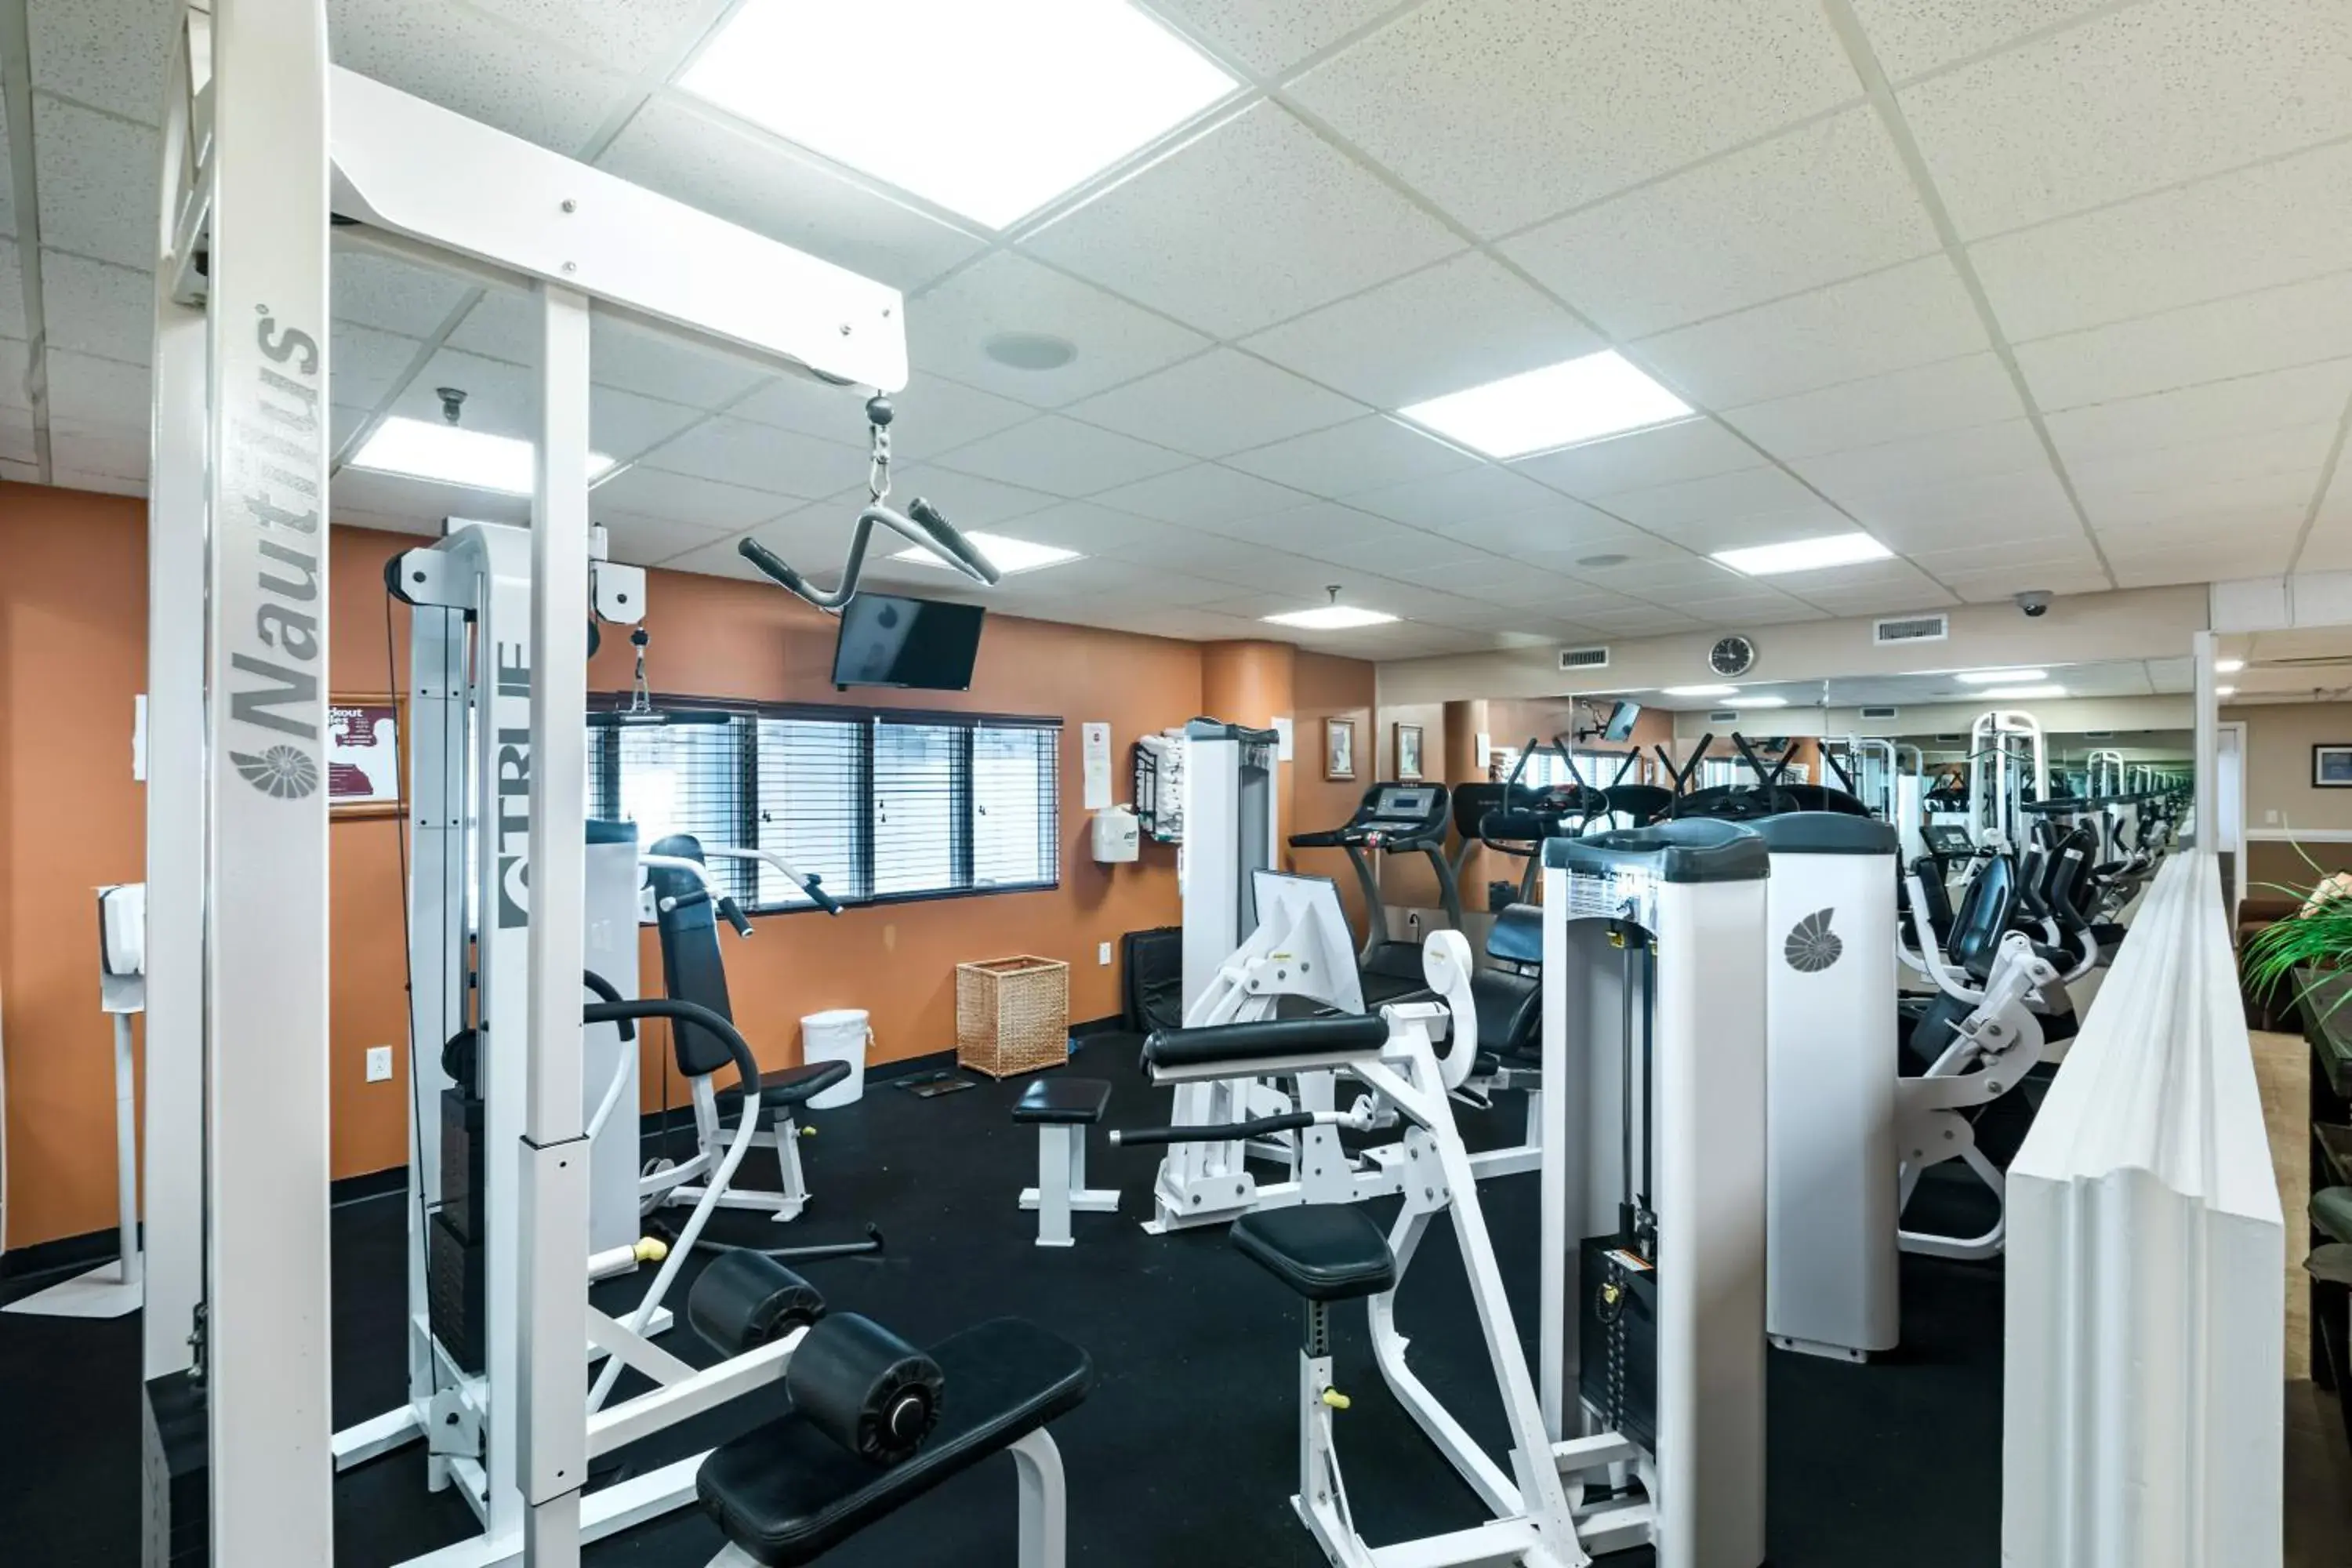 Fitness centre/facilities, Fitness Center/Facilities in Ocean Key Resort